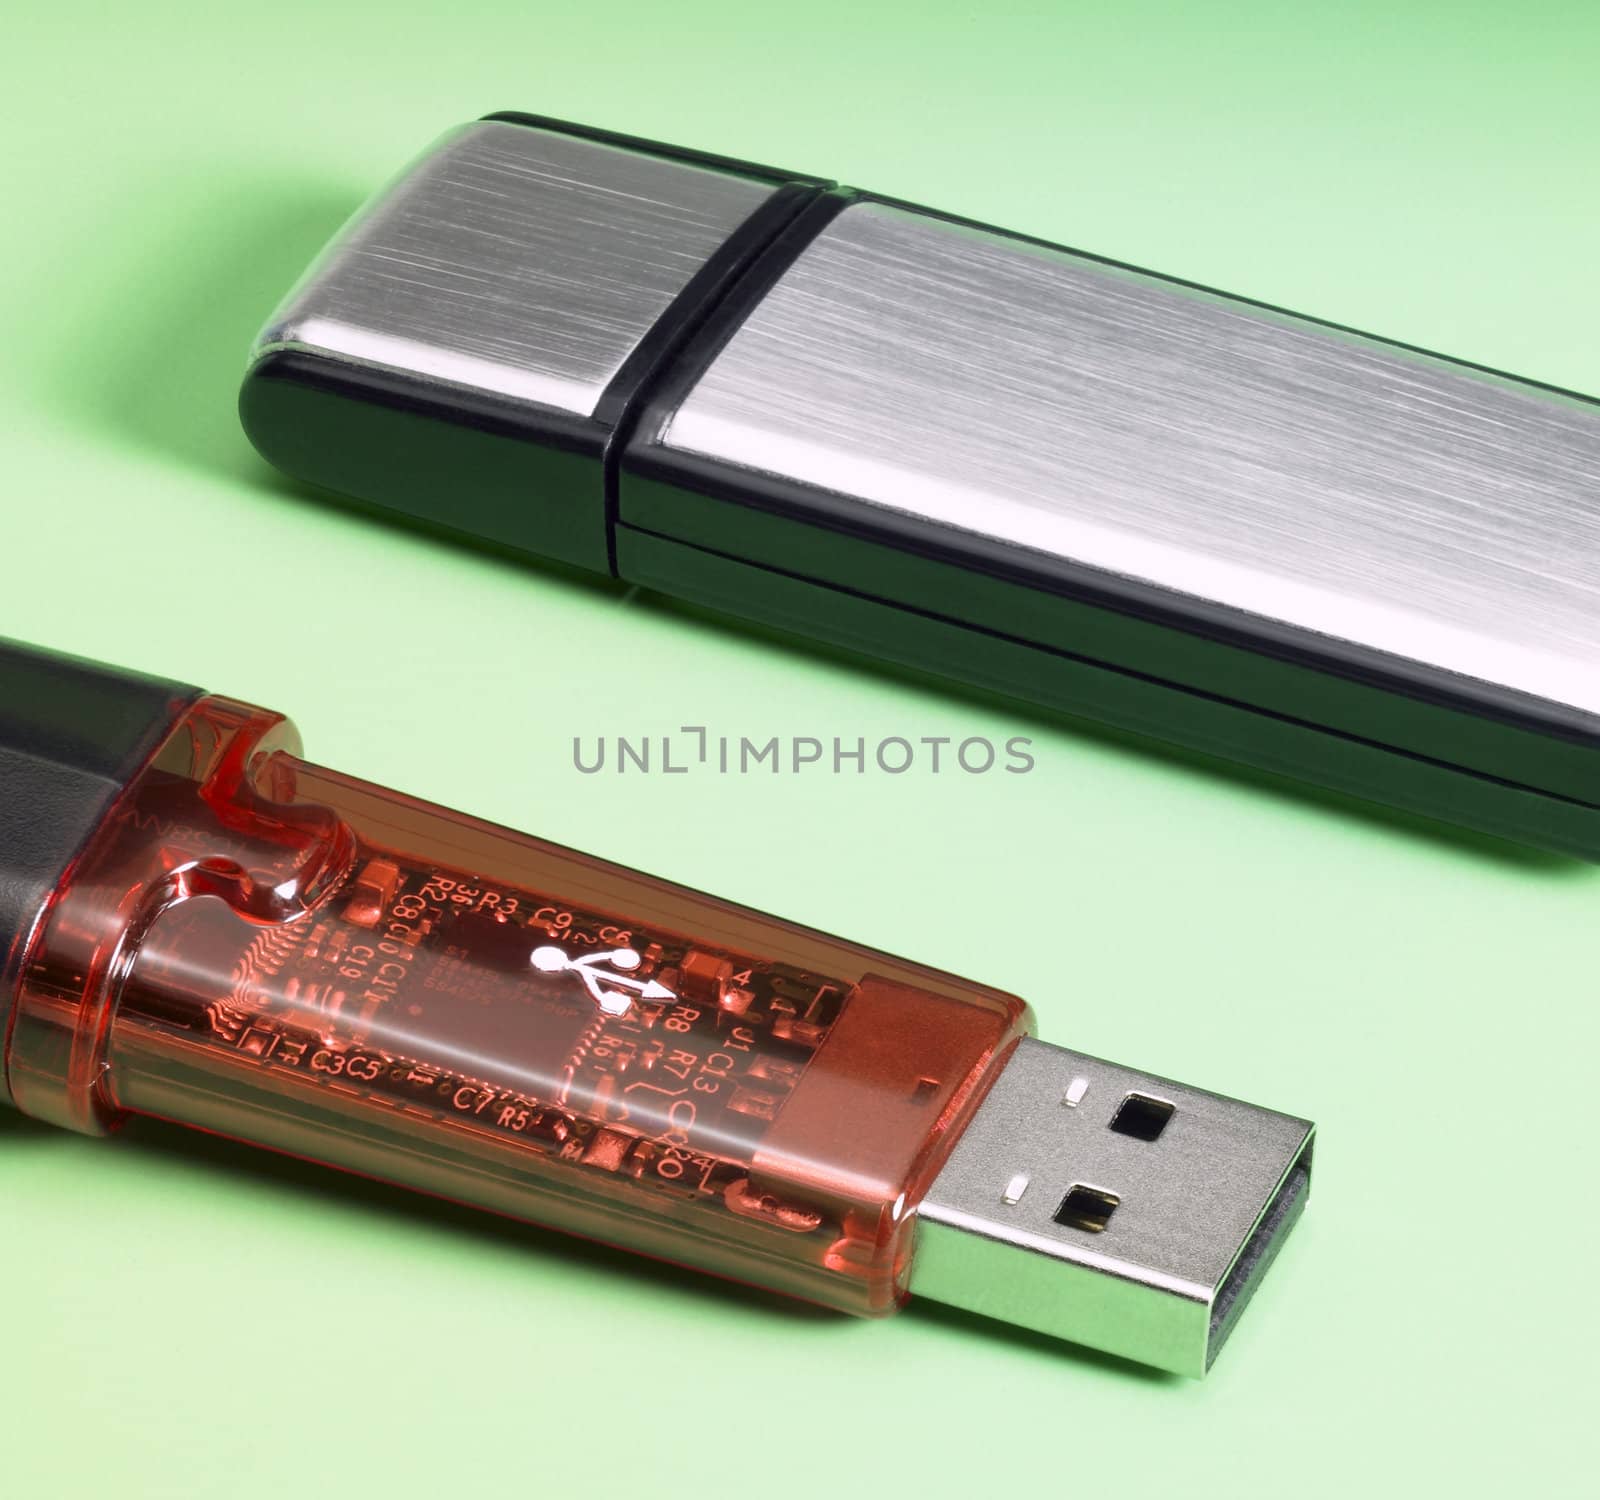 USB sticks by gewoldi